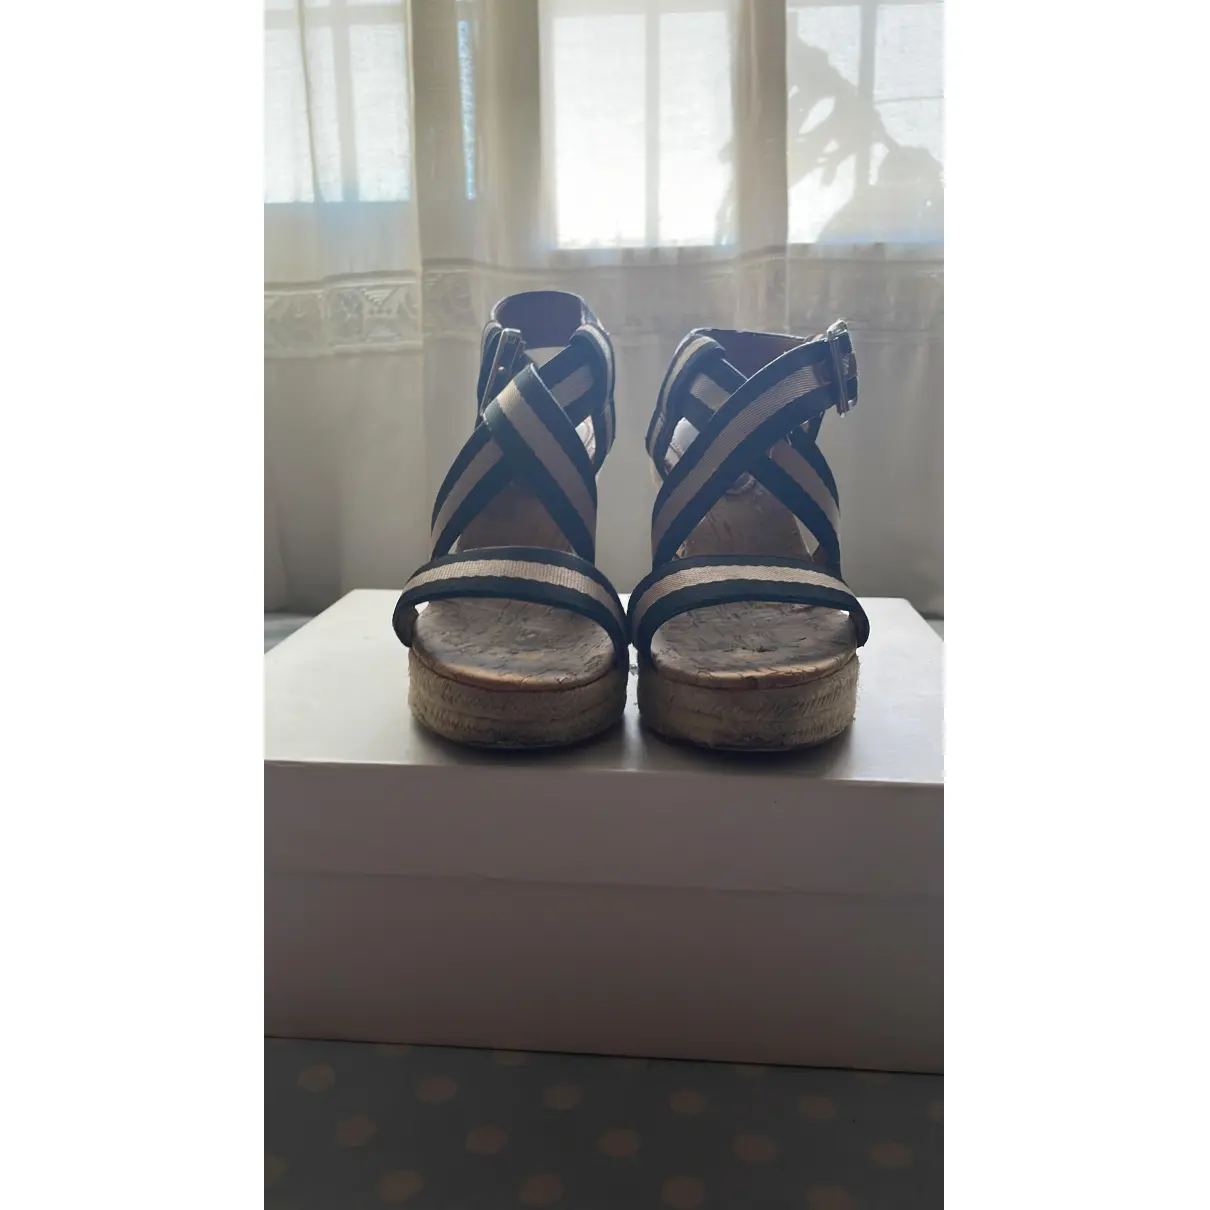 Buy Bimba y Lola Cloth sandals online